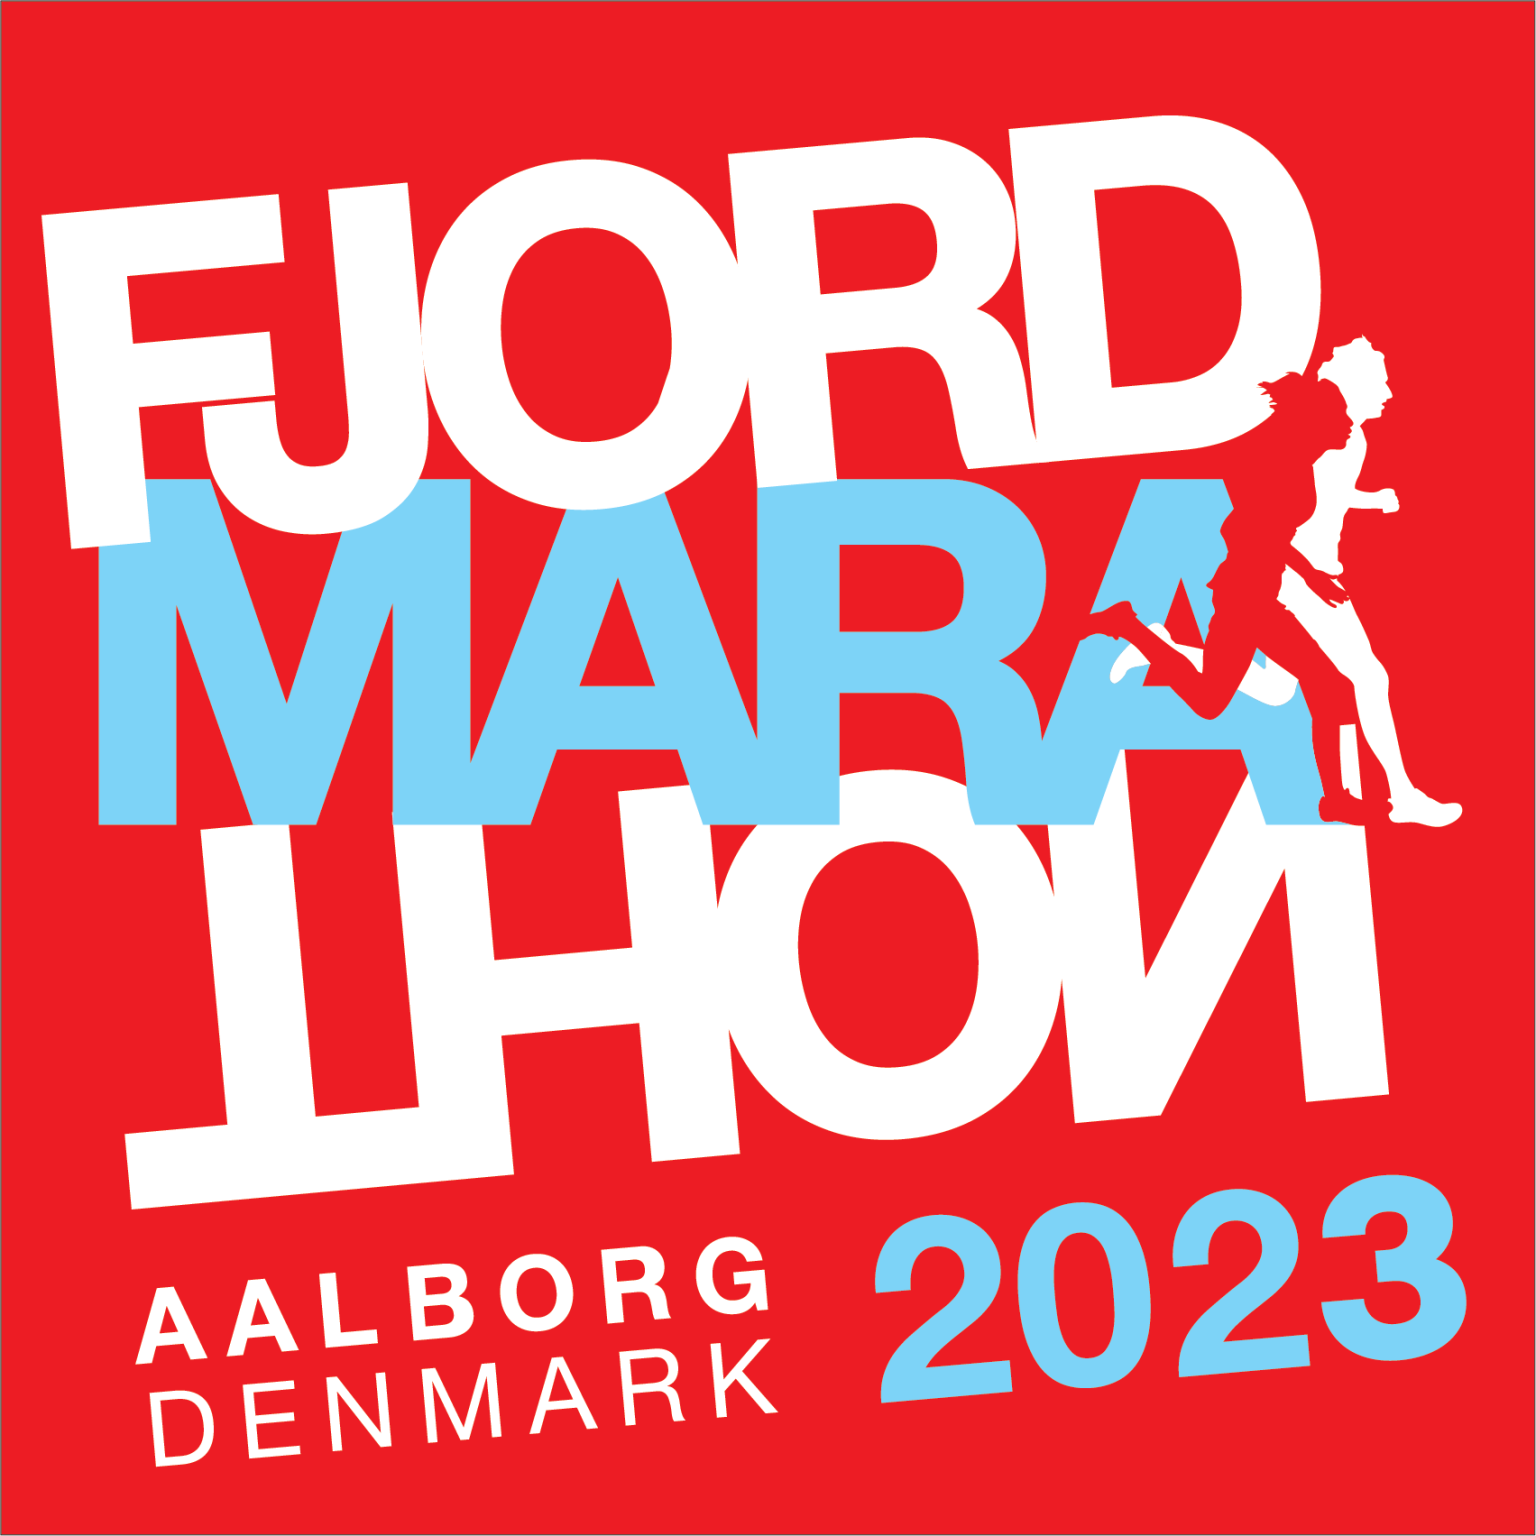 Fjordmarathon llborg